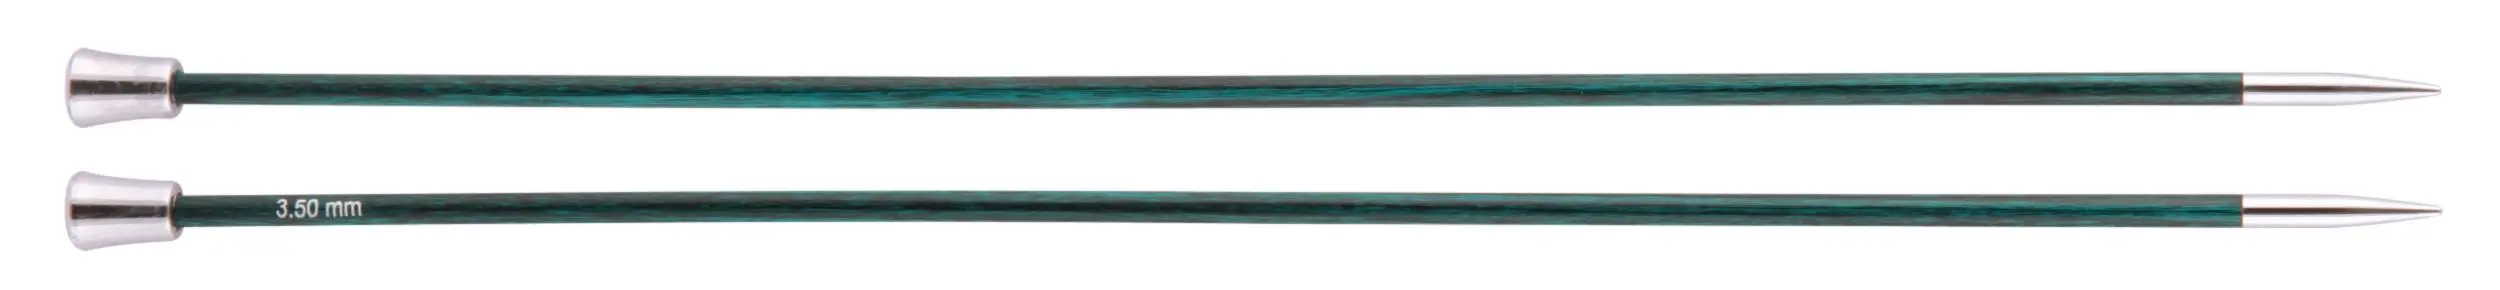 29213 Спиці прямі Royale KnitPro, 35 см, 3.50 мм